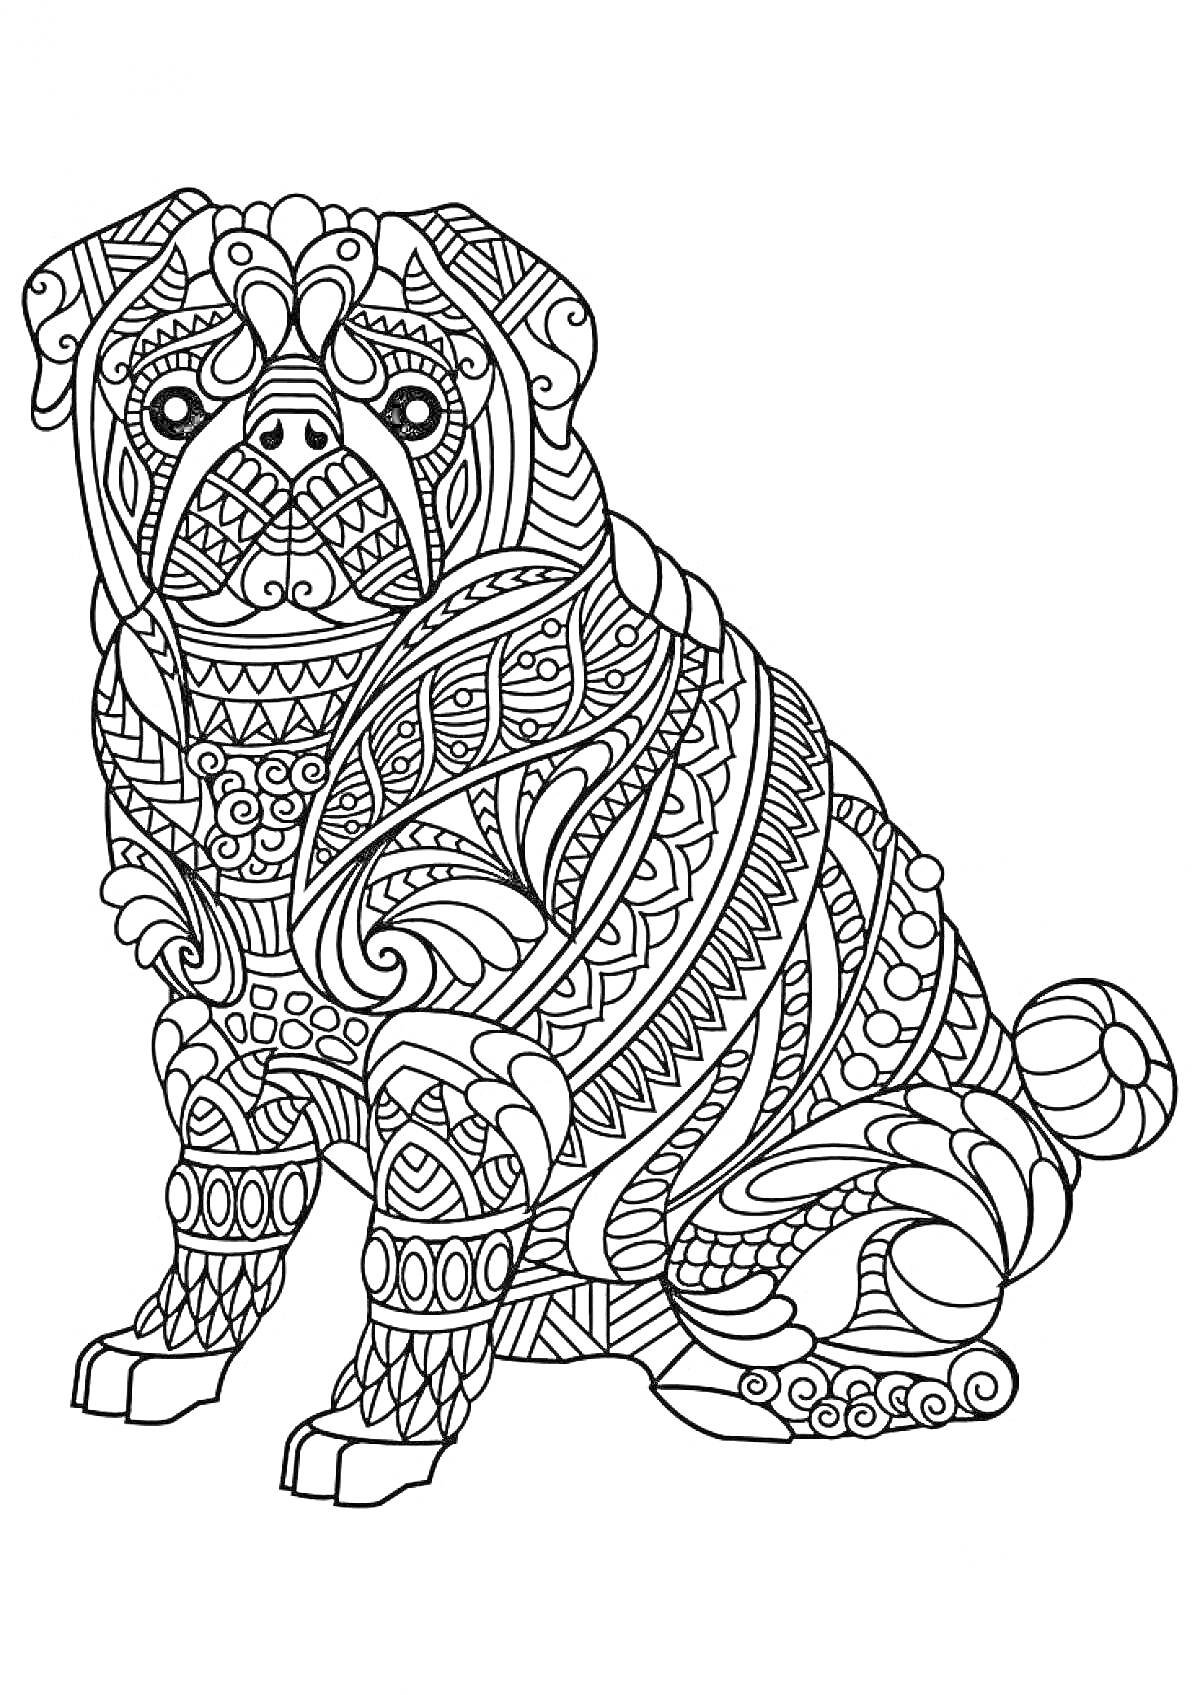 Антистресс раскраска - собака с декоративными узорами, абстрактные и геометрические элементы